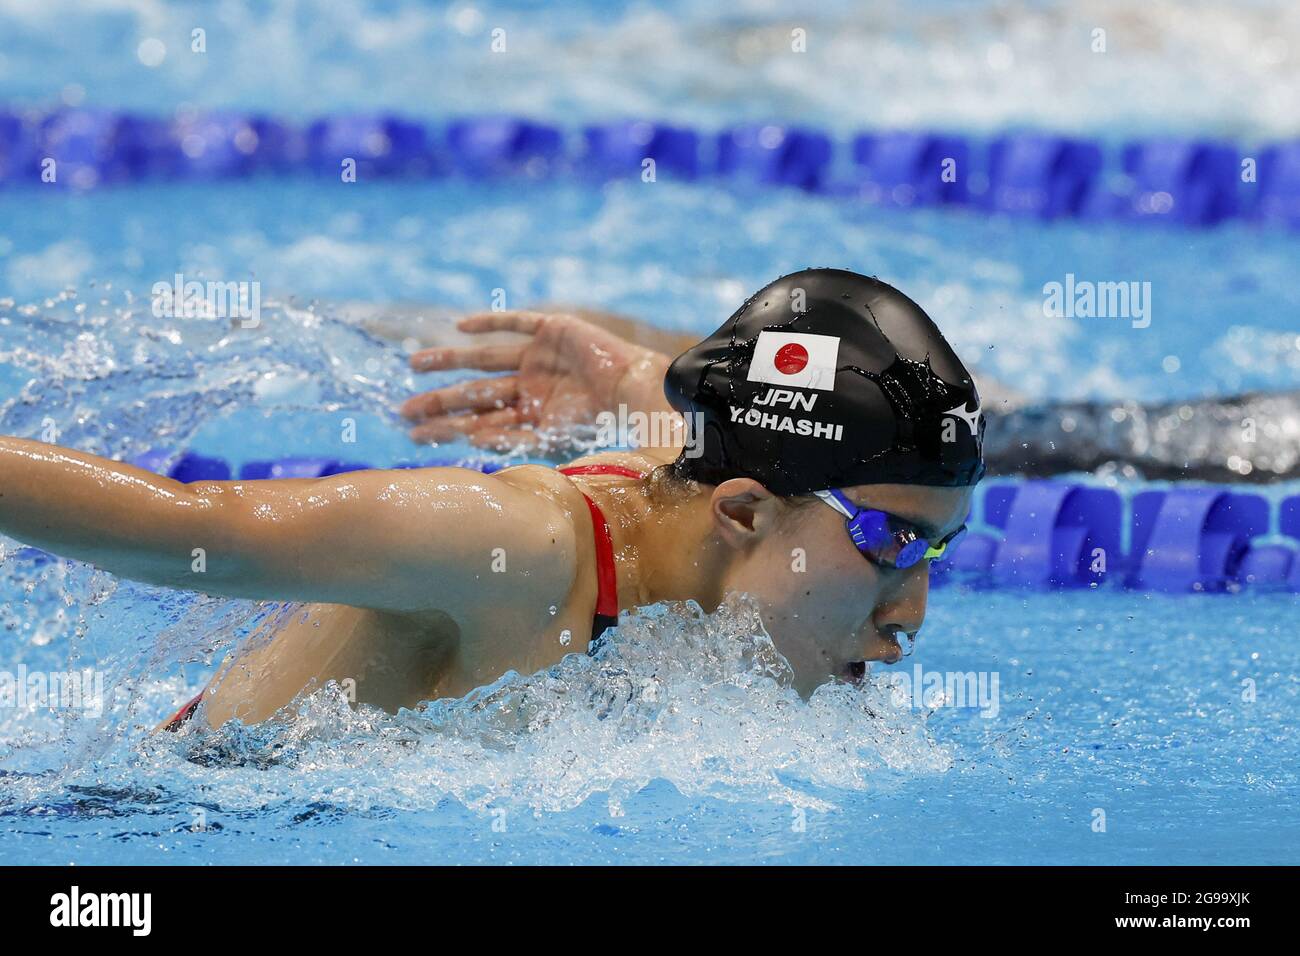 Tokyo, Giappone. 25 luglio 2021. Yui Ohashi del Team Japan compete nella Medley femminile da 400 m al Tokyo Aquatics Center, durante i Giochi Olimpici estivi di Tokyo, Giappone, domenica 25 luglio 2021. Foto di Tasos Katopodis/UPI. Credit: UPI/Alamy Live News Foto Stock